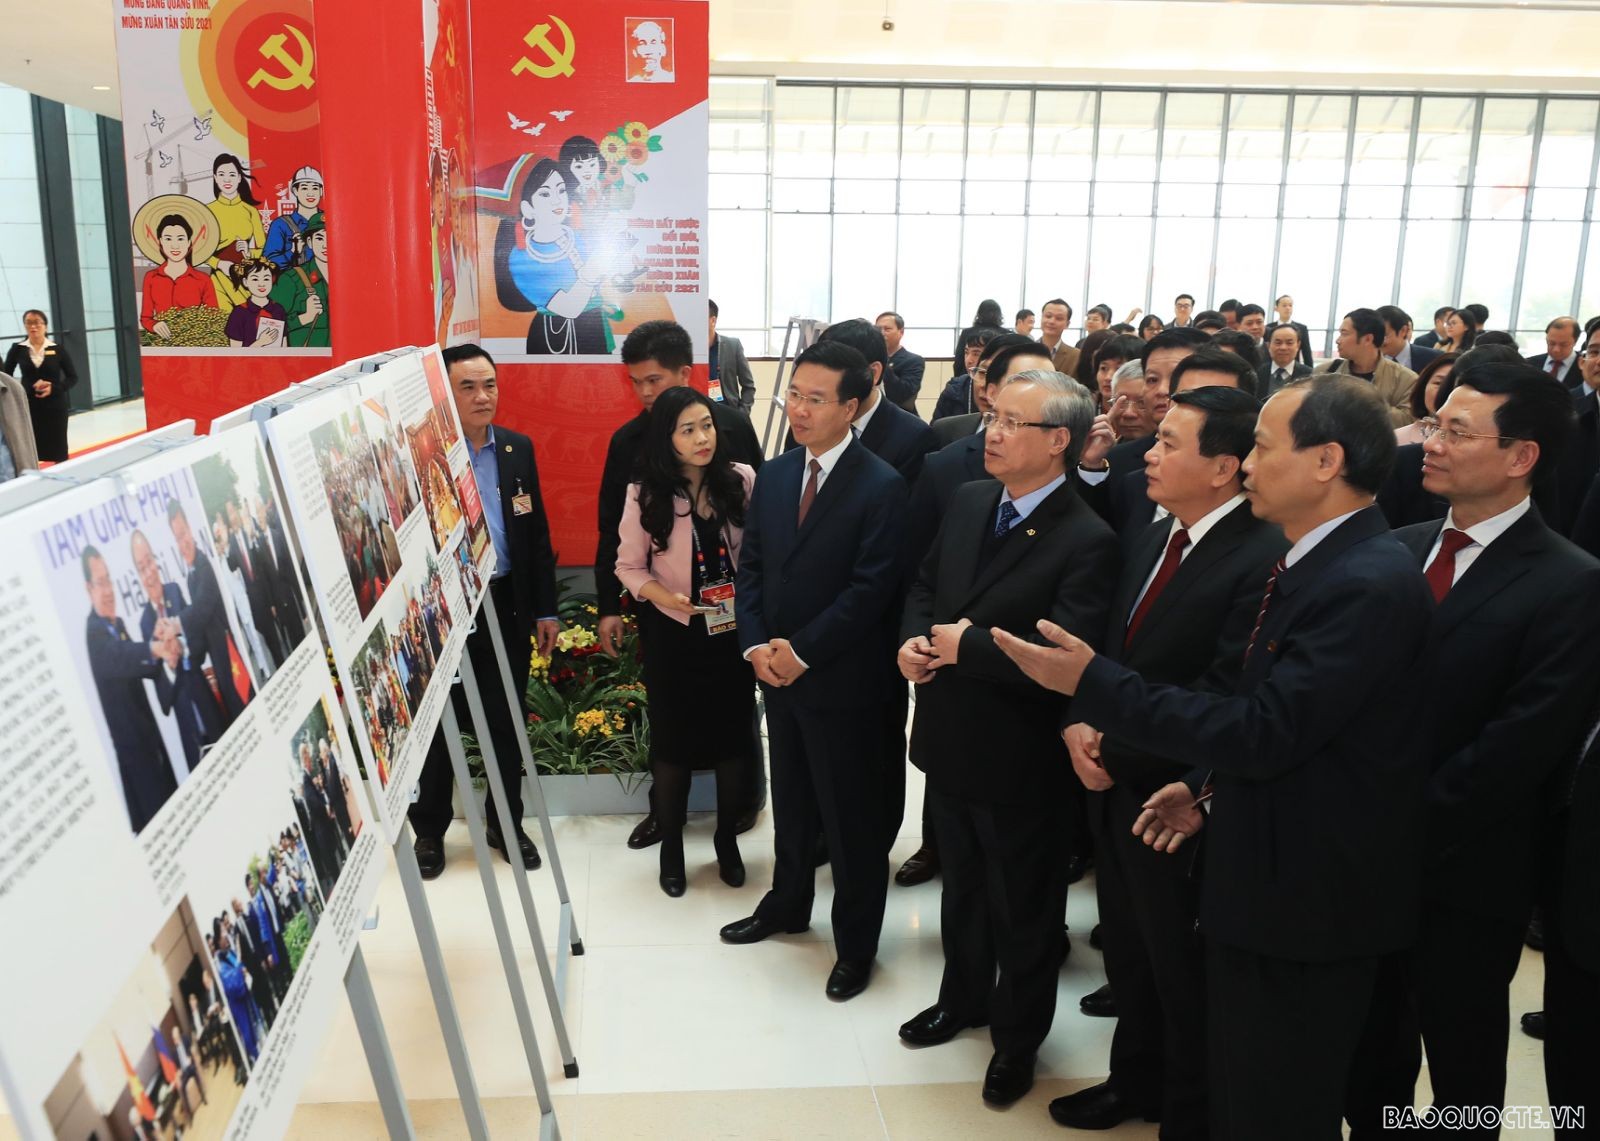 Phát hành bộ tem chào mừng Đại hội XIII của Đảng Cộng sản Việt Nam